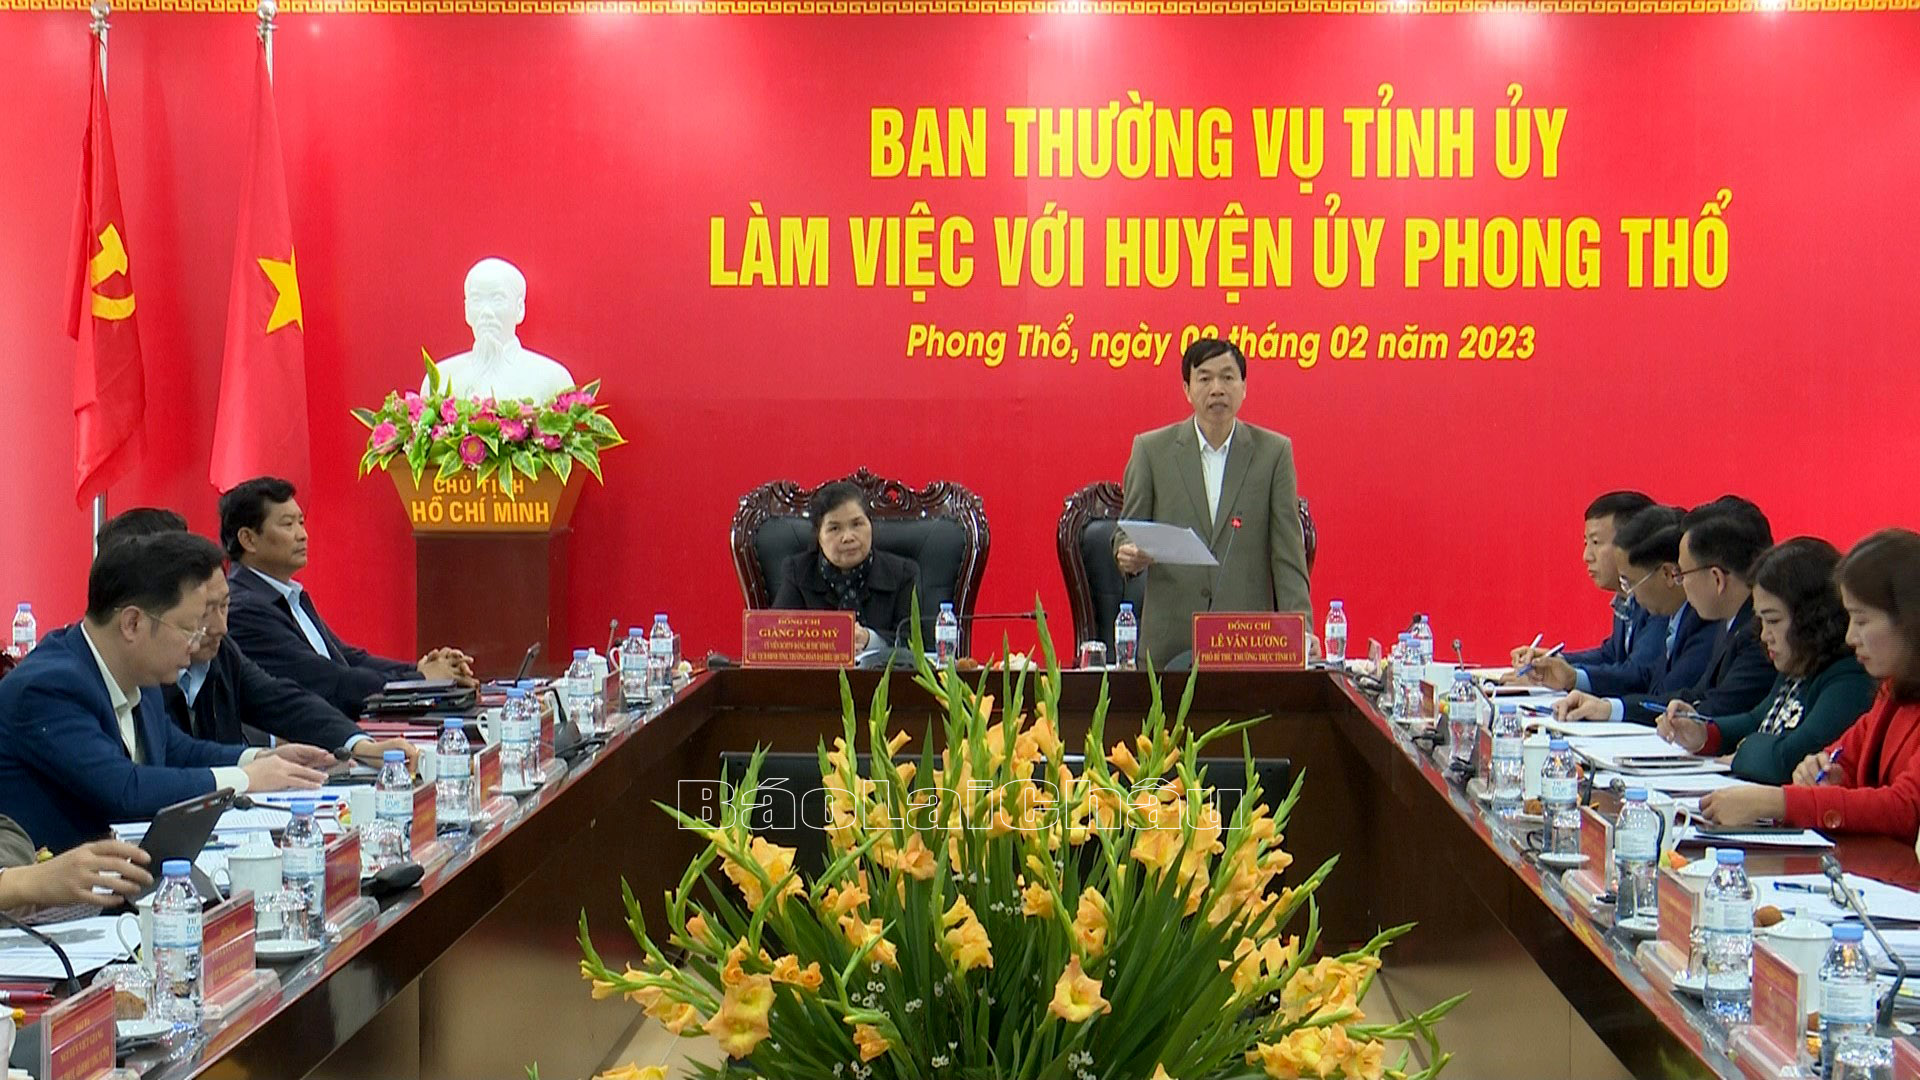 Đồng chí Lê Văn Lương - Phó Bí thư Thường trực Tỉnh ủy phát biểu tại buổi làm việc.